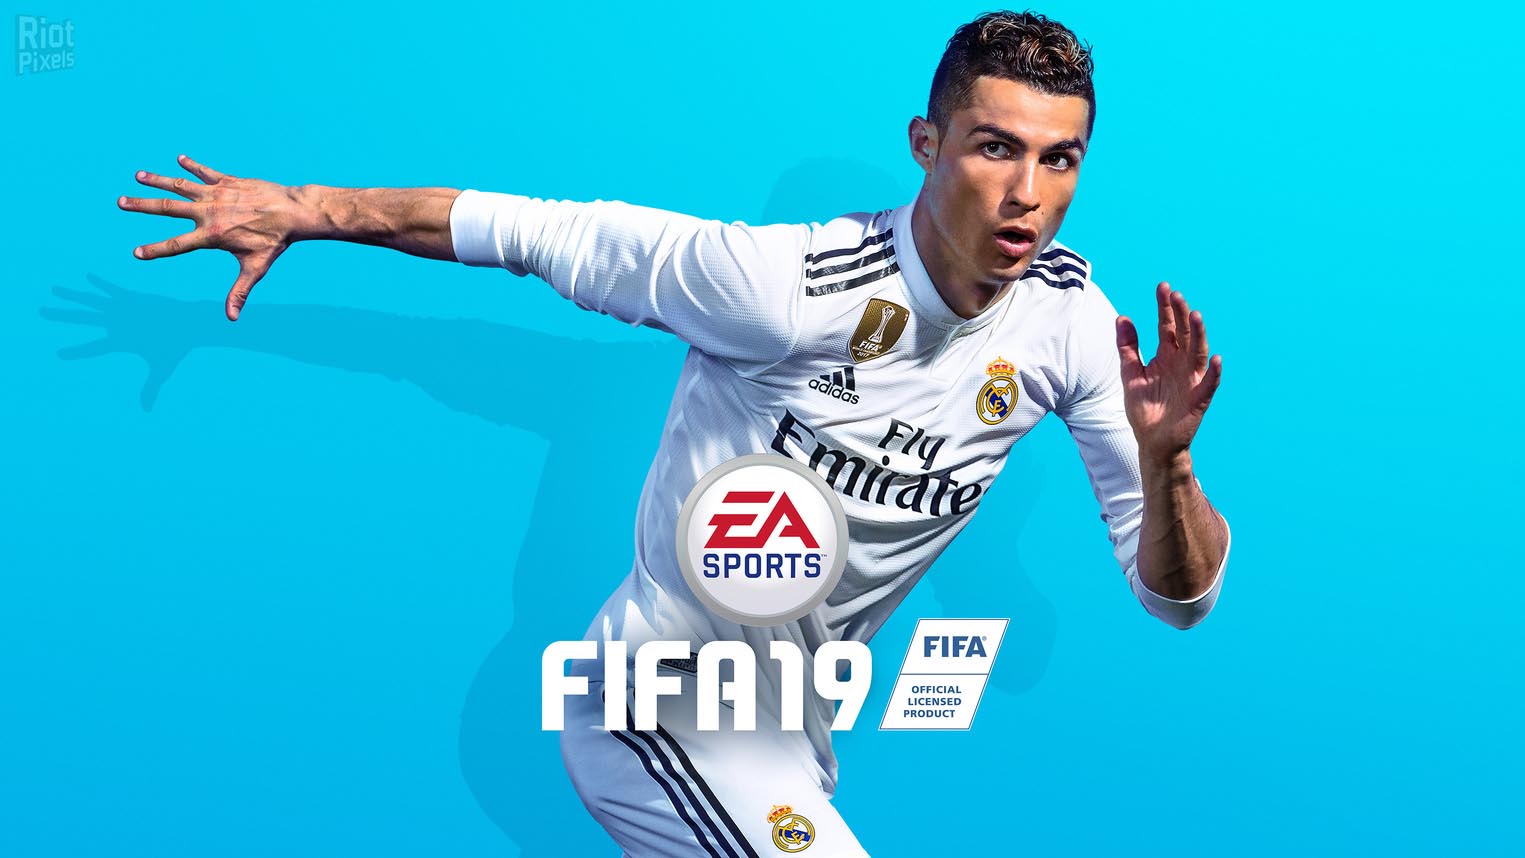 FIFA 19 + Update 4 + Squad Update 11.30.2018